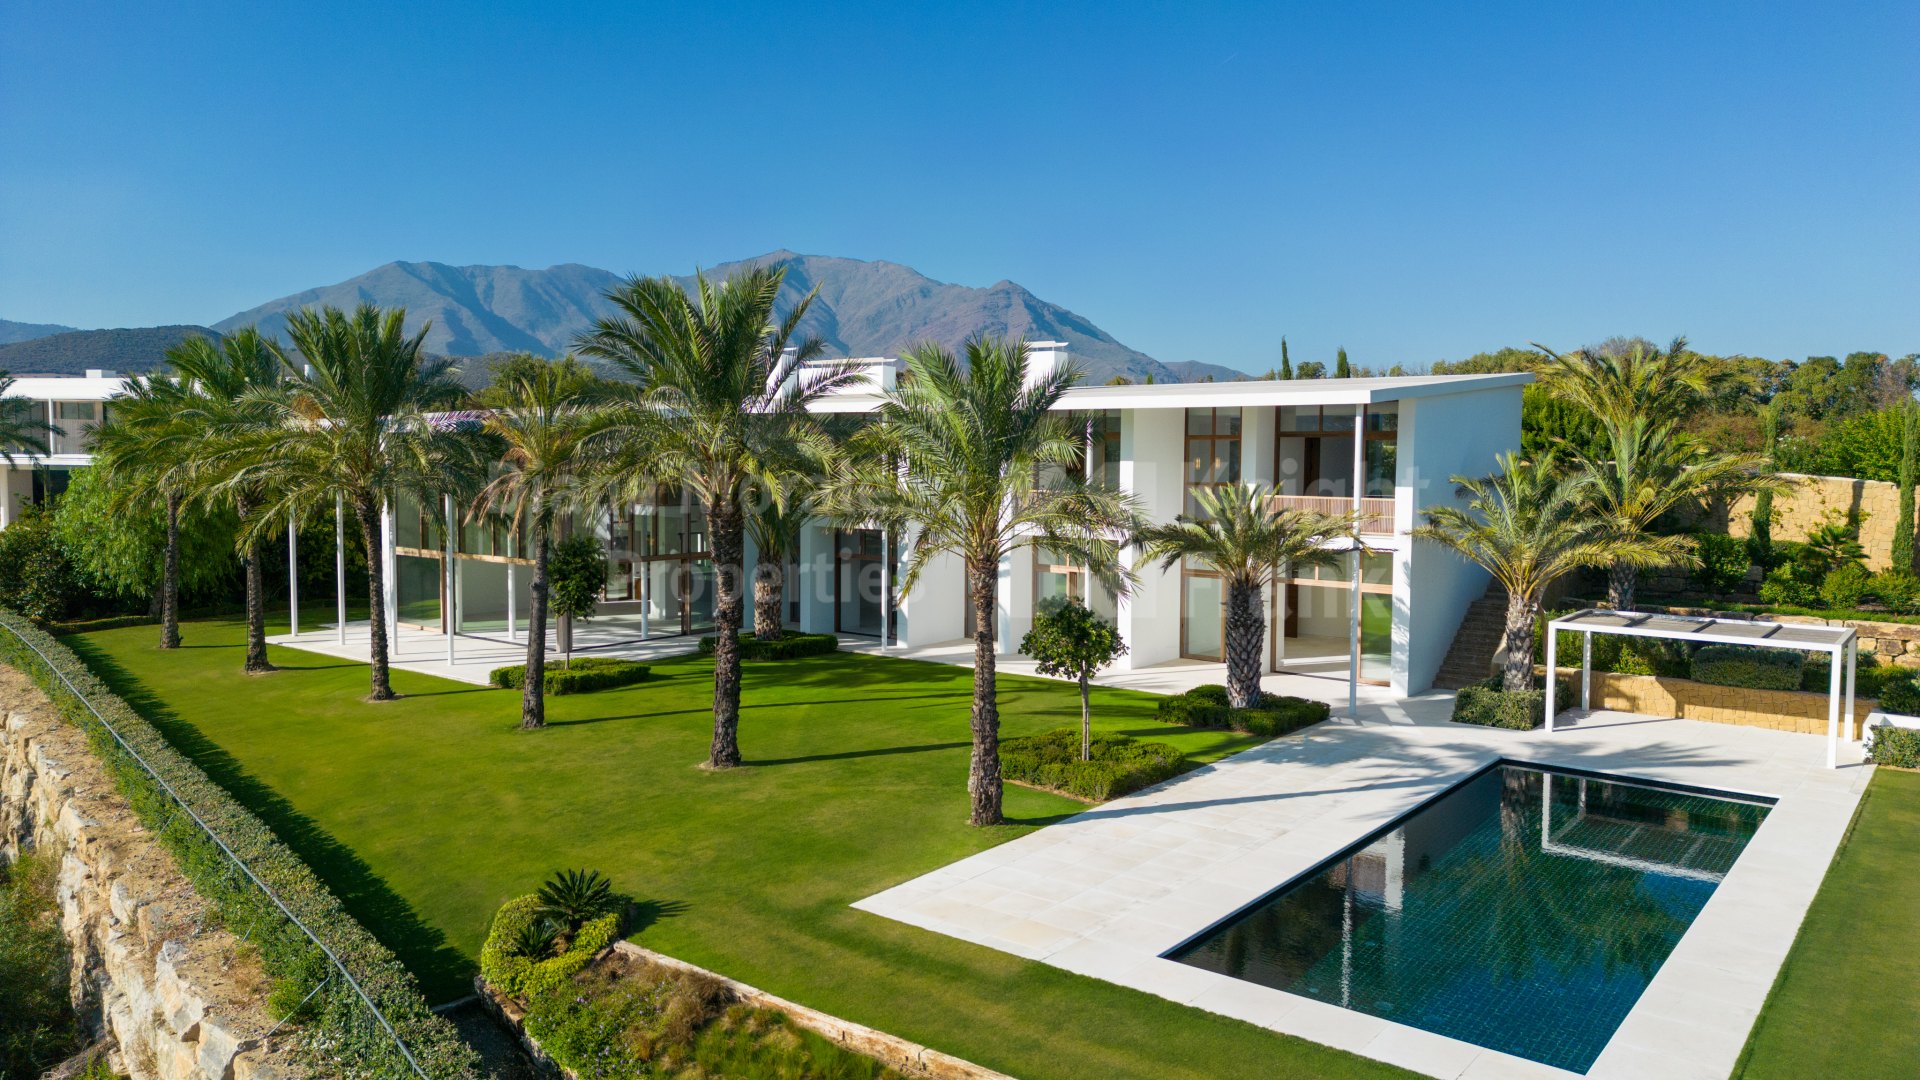 Six-bedroom villa in Golfside Villas, Finca Cortesin